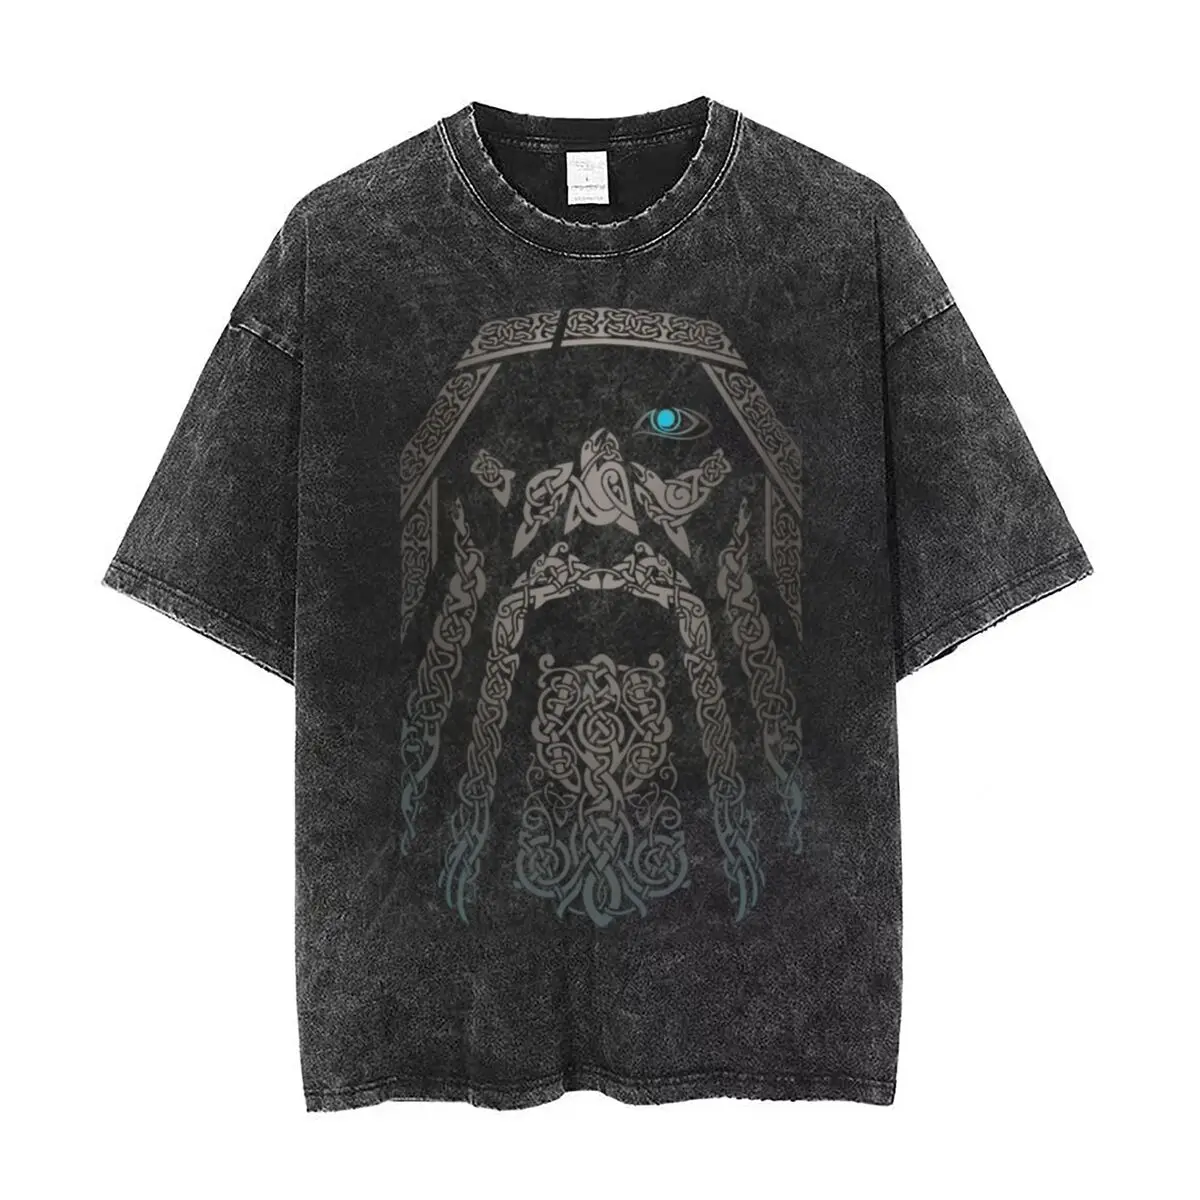 

Washed T Shirts ODIN Vikings Valhalla Son Of Odin Hip Hop Casual T-Shirt Harajuku Streetwear Short Sleeve Printed Tops Tee Shirt